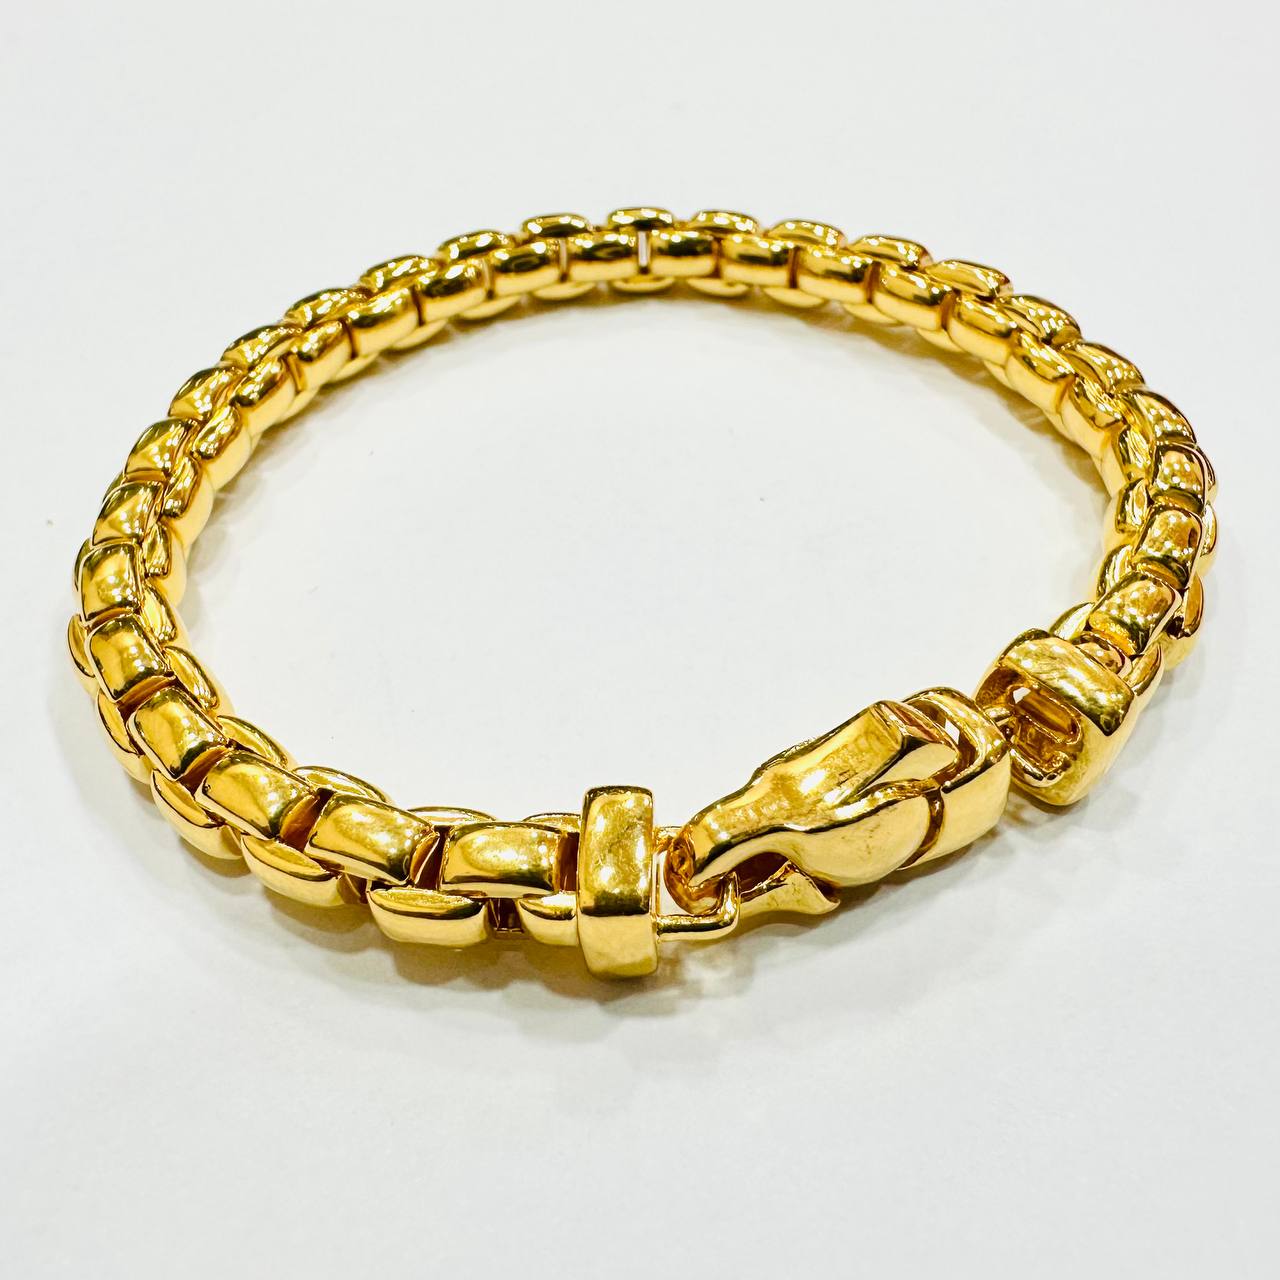 22k / 916 Gold Semi Solid Anchor Bracelet V1-916 gold-Best Gold Shop